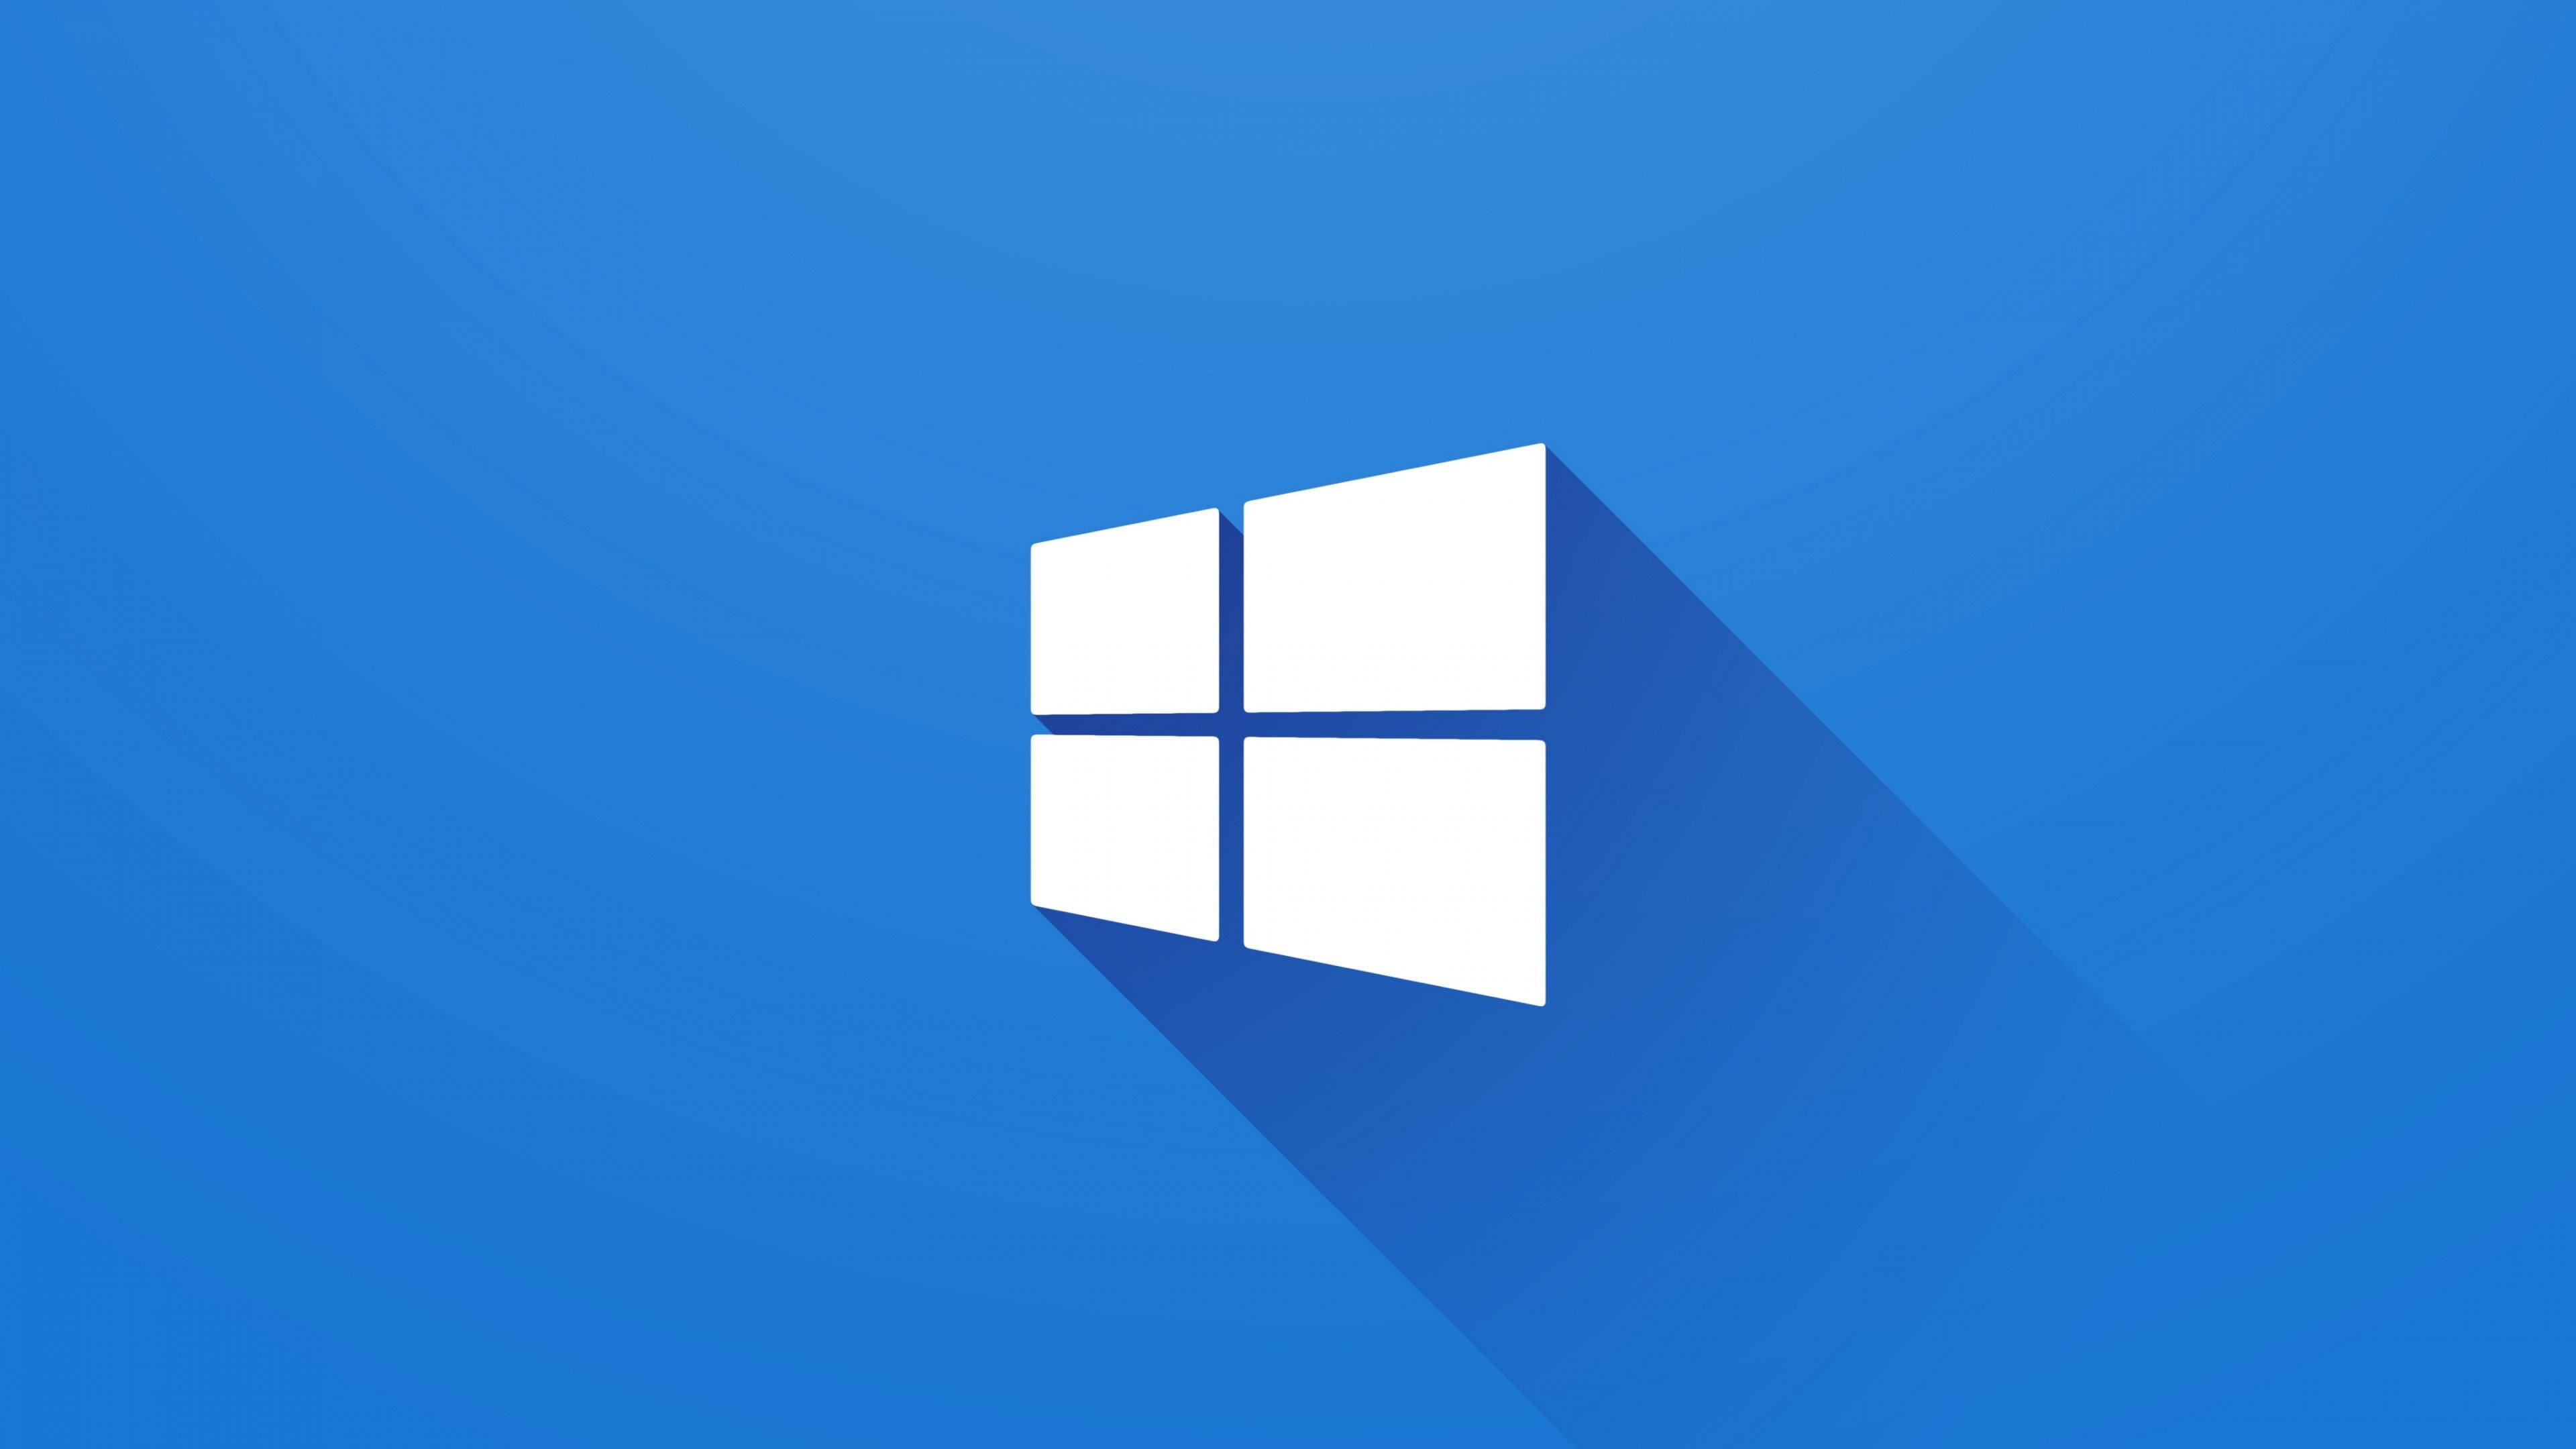 Không chỉ đơn giản là một hệ điều hành, Windows 10 còn sở hữu rất nhiều bộ hình nền độc đáo và ấn tượng, phục vụ cho những người dùng yêu thích sự đa dạng và cá tính. Hãy tham gia cùng chúng tôi và khám phá bộ sưu tập wallpapers Windows 10 đầy sáng tạo!